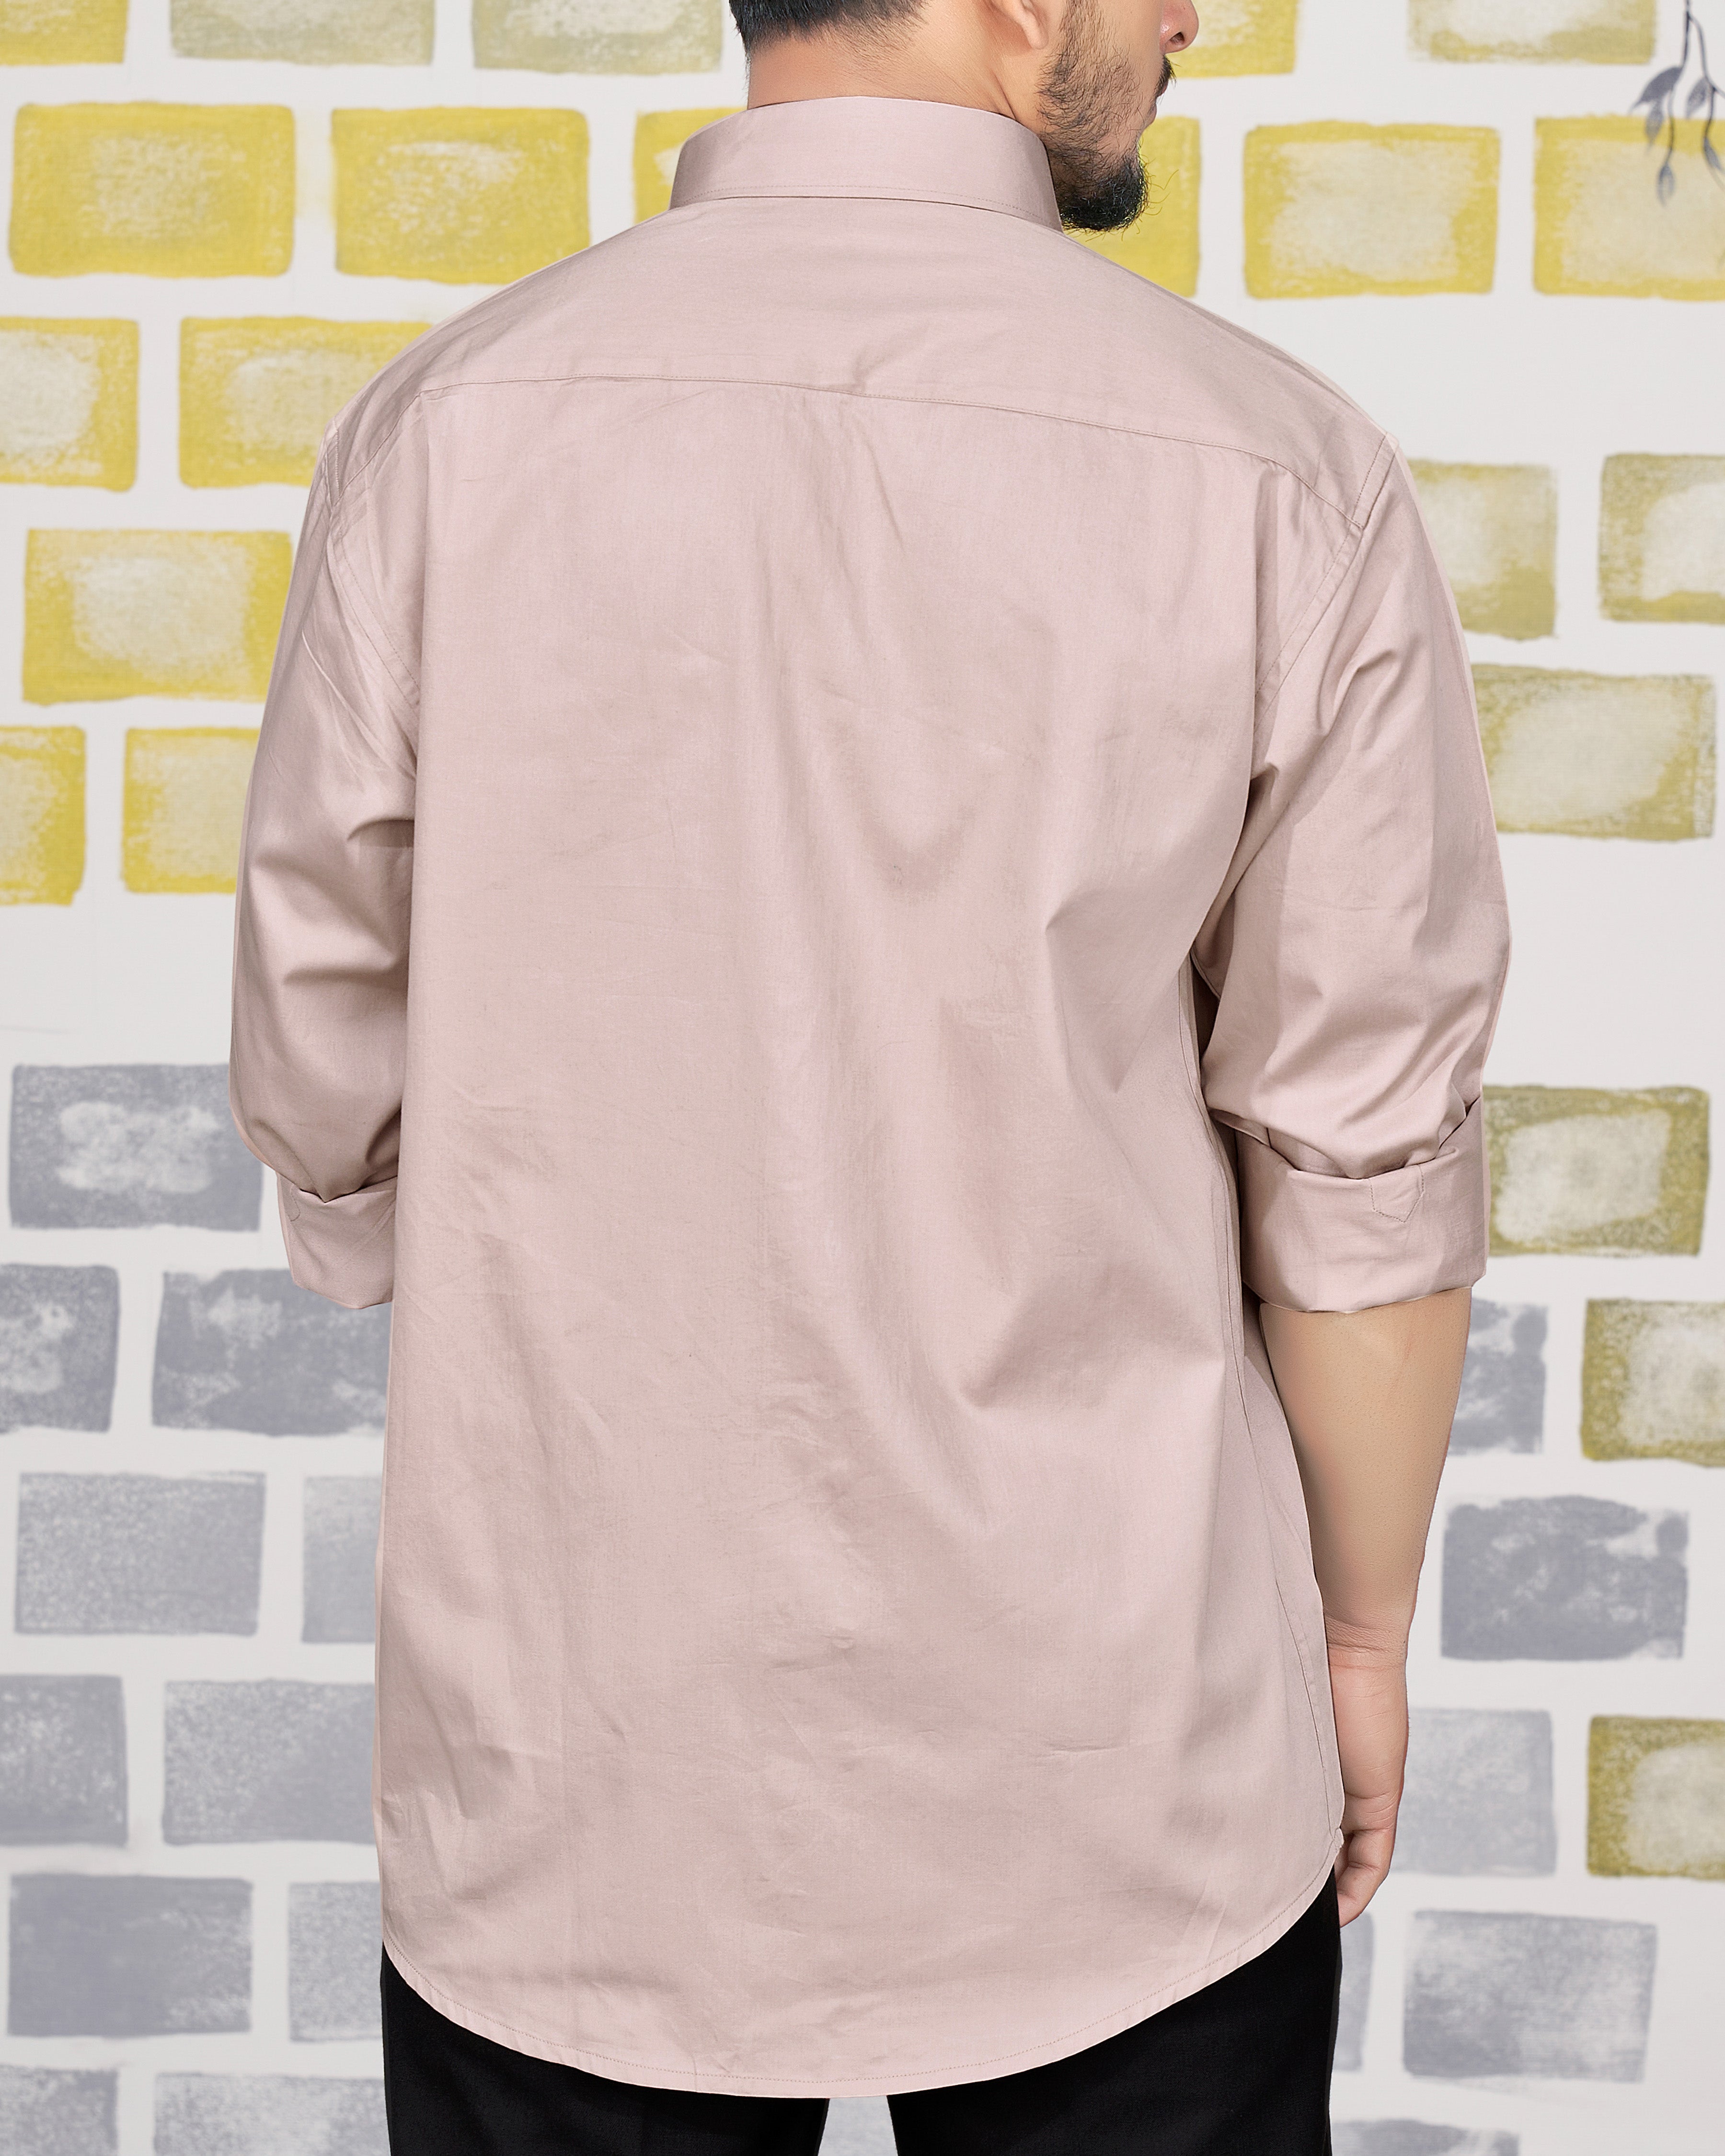 Nickel Peach Eagle Subtle Sheen Embroidered Super Soft Premium Cotton Designer Shirt